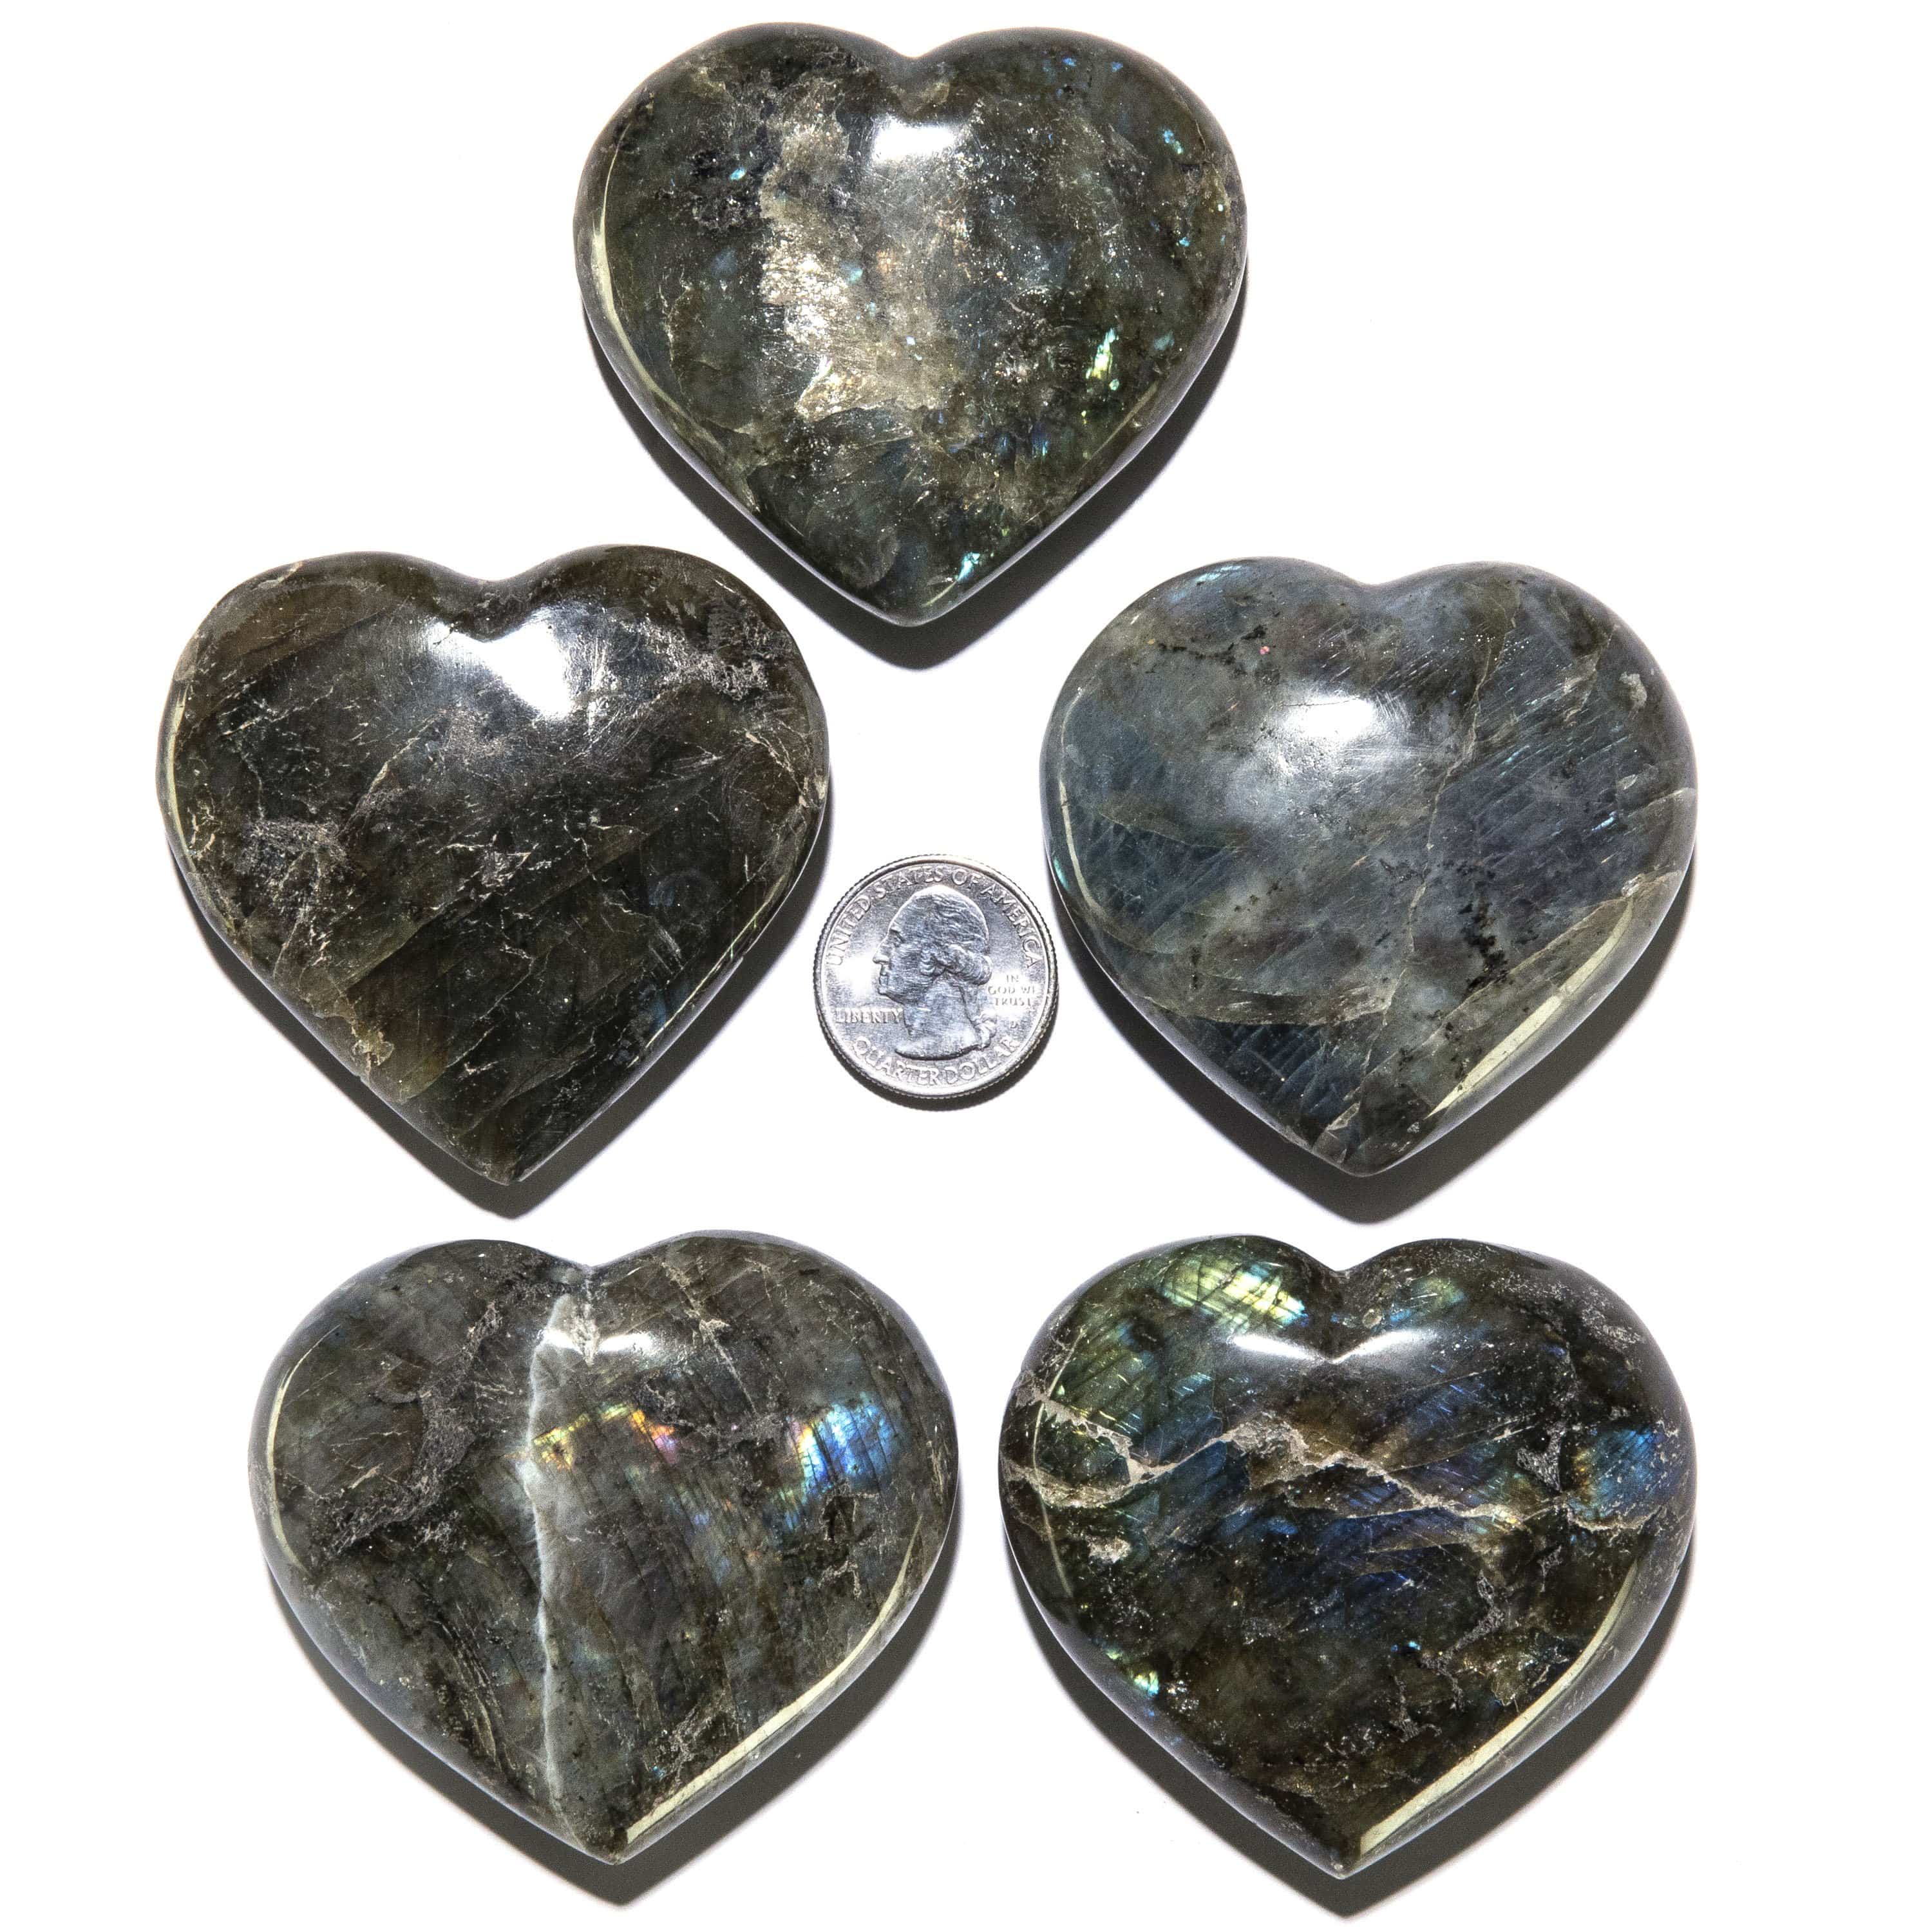 KALIFANO Labradorite Labradorite Gemstone Heart Carving 230g / 3.5in. GH200-LB